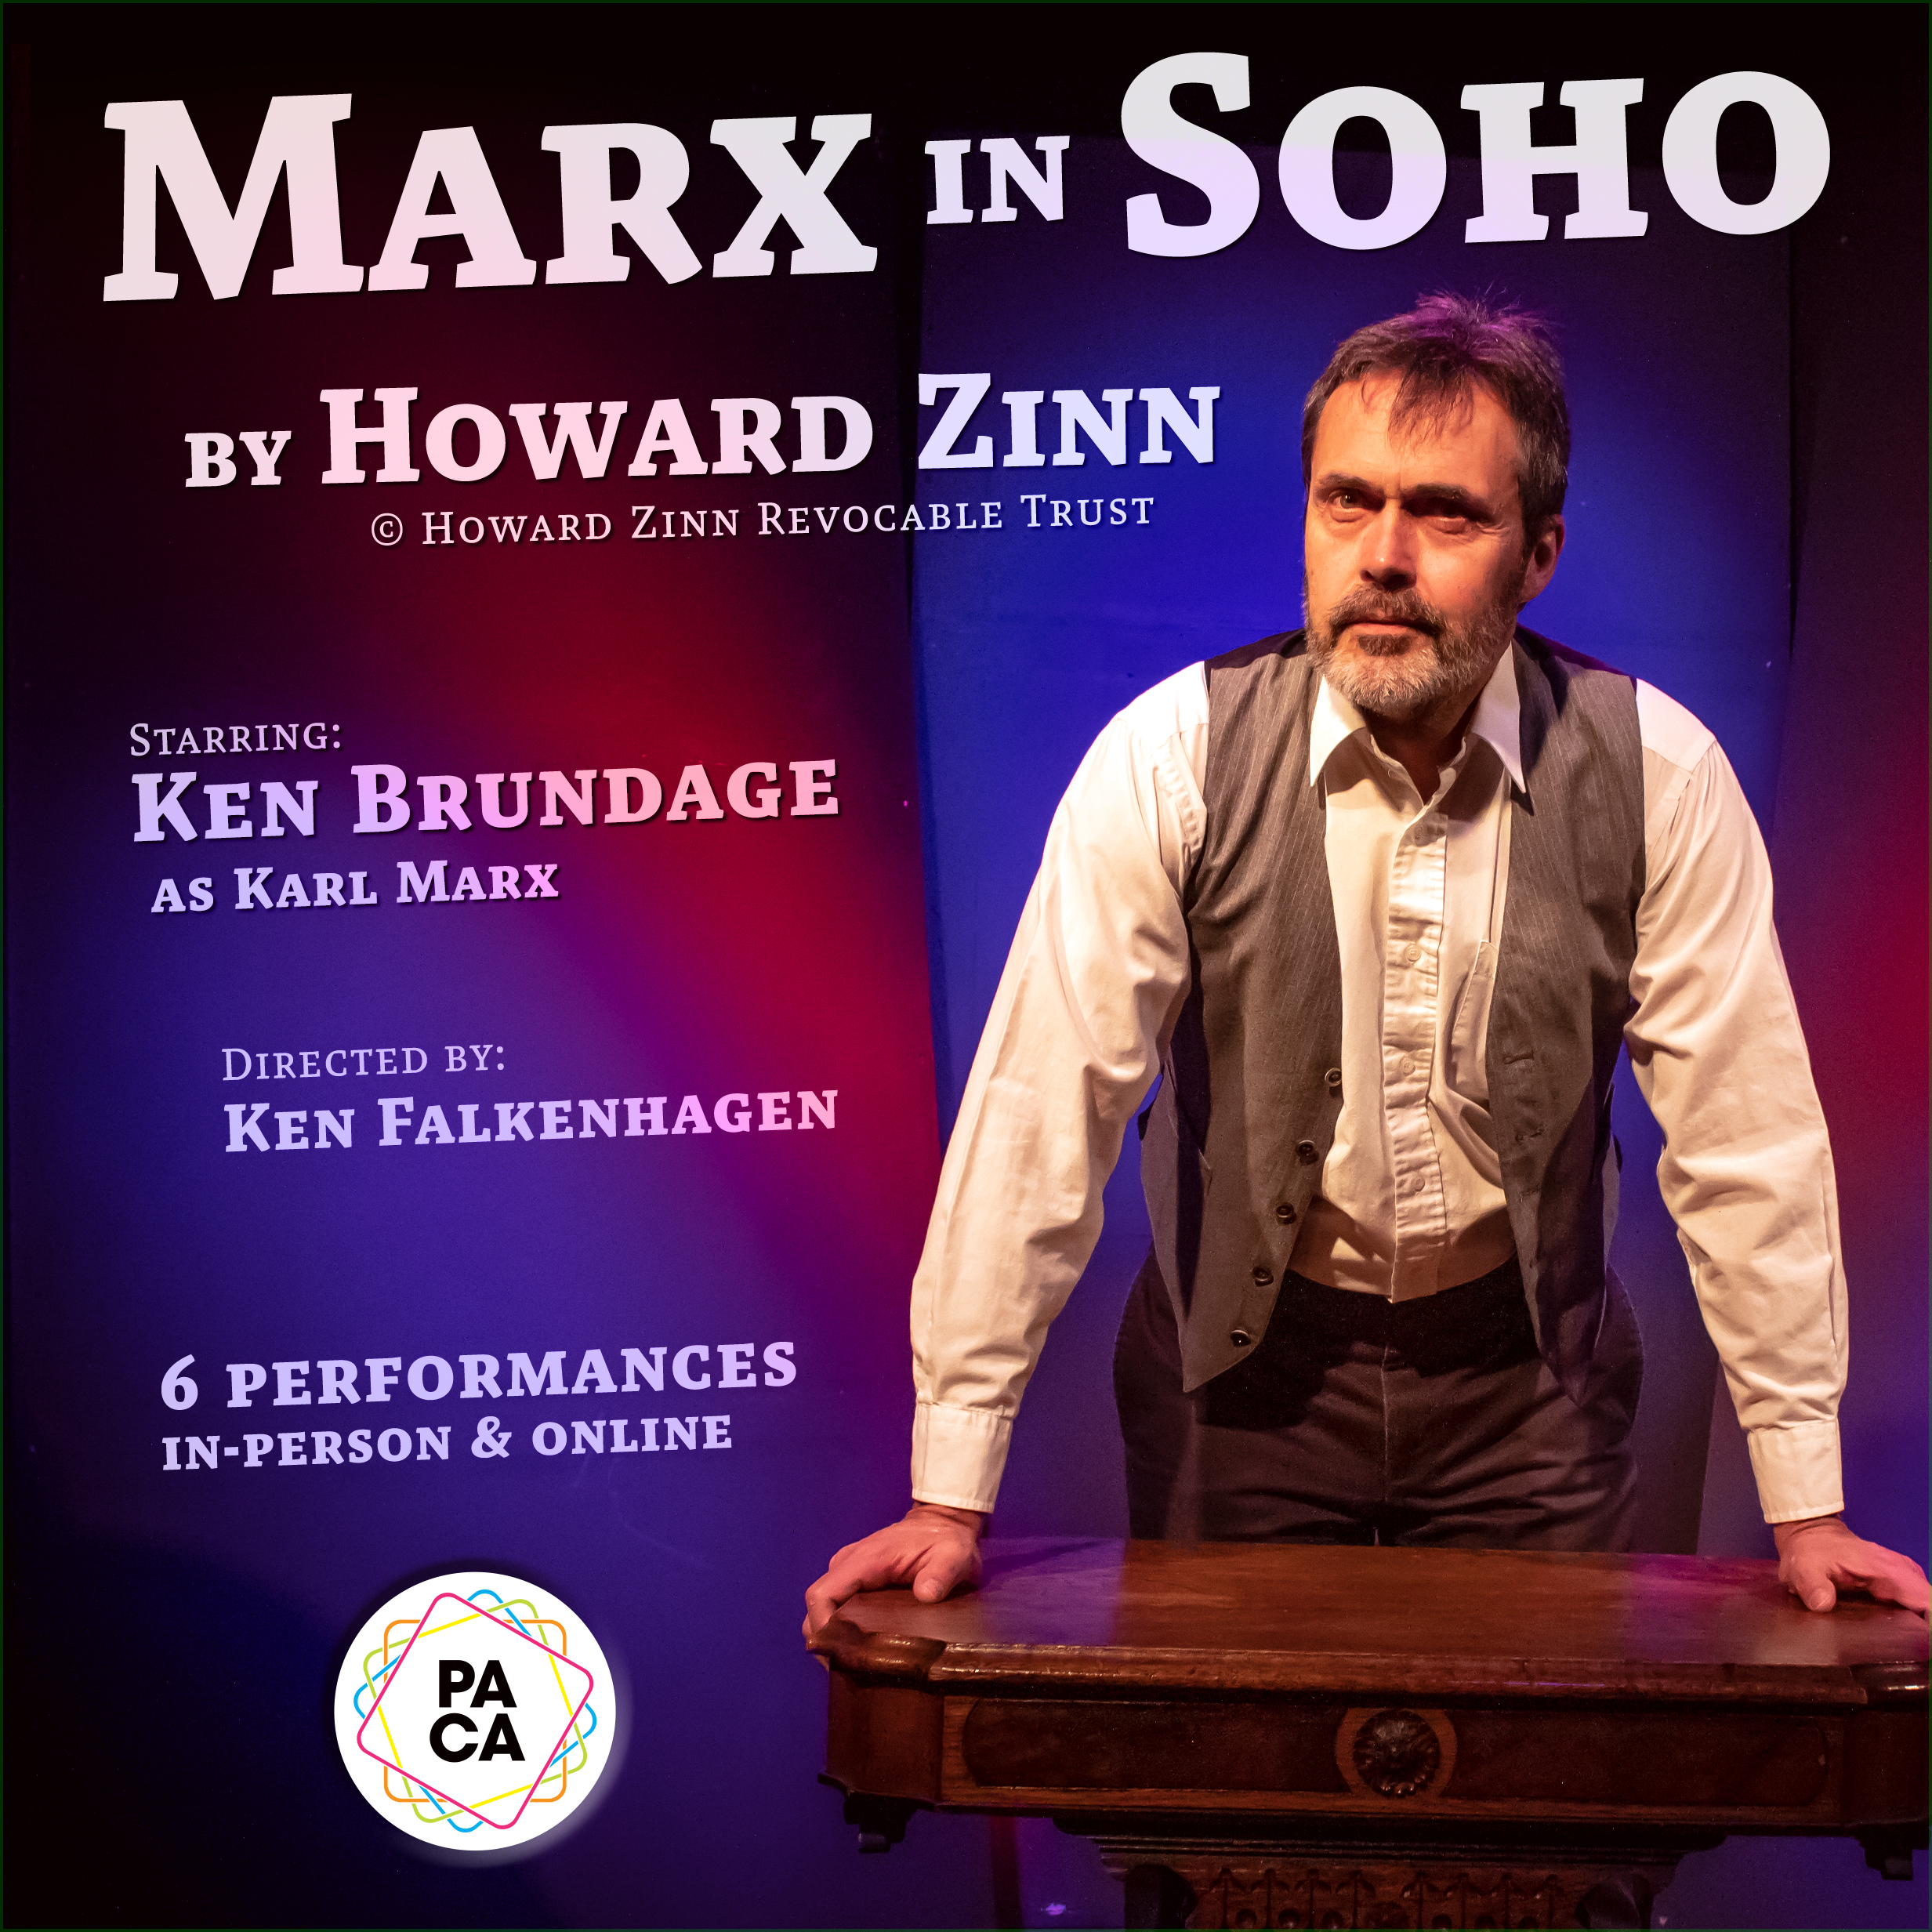 MARX IN SOHO by Howard Zinn